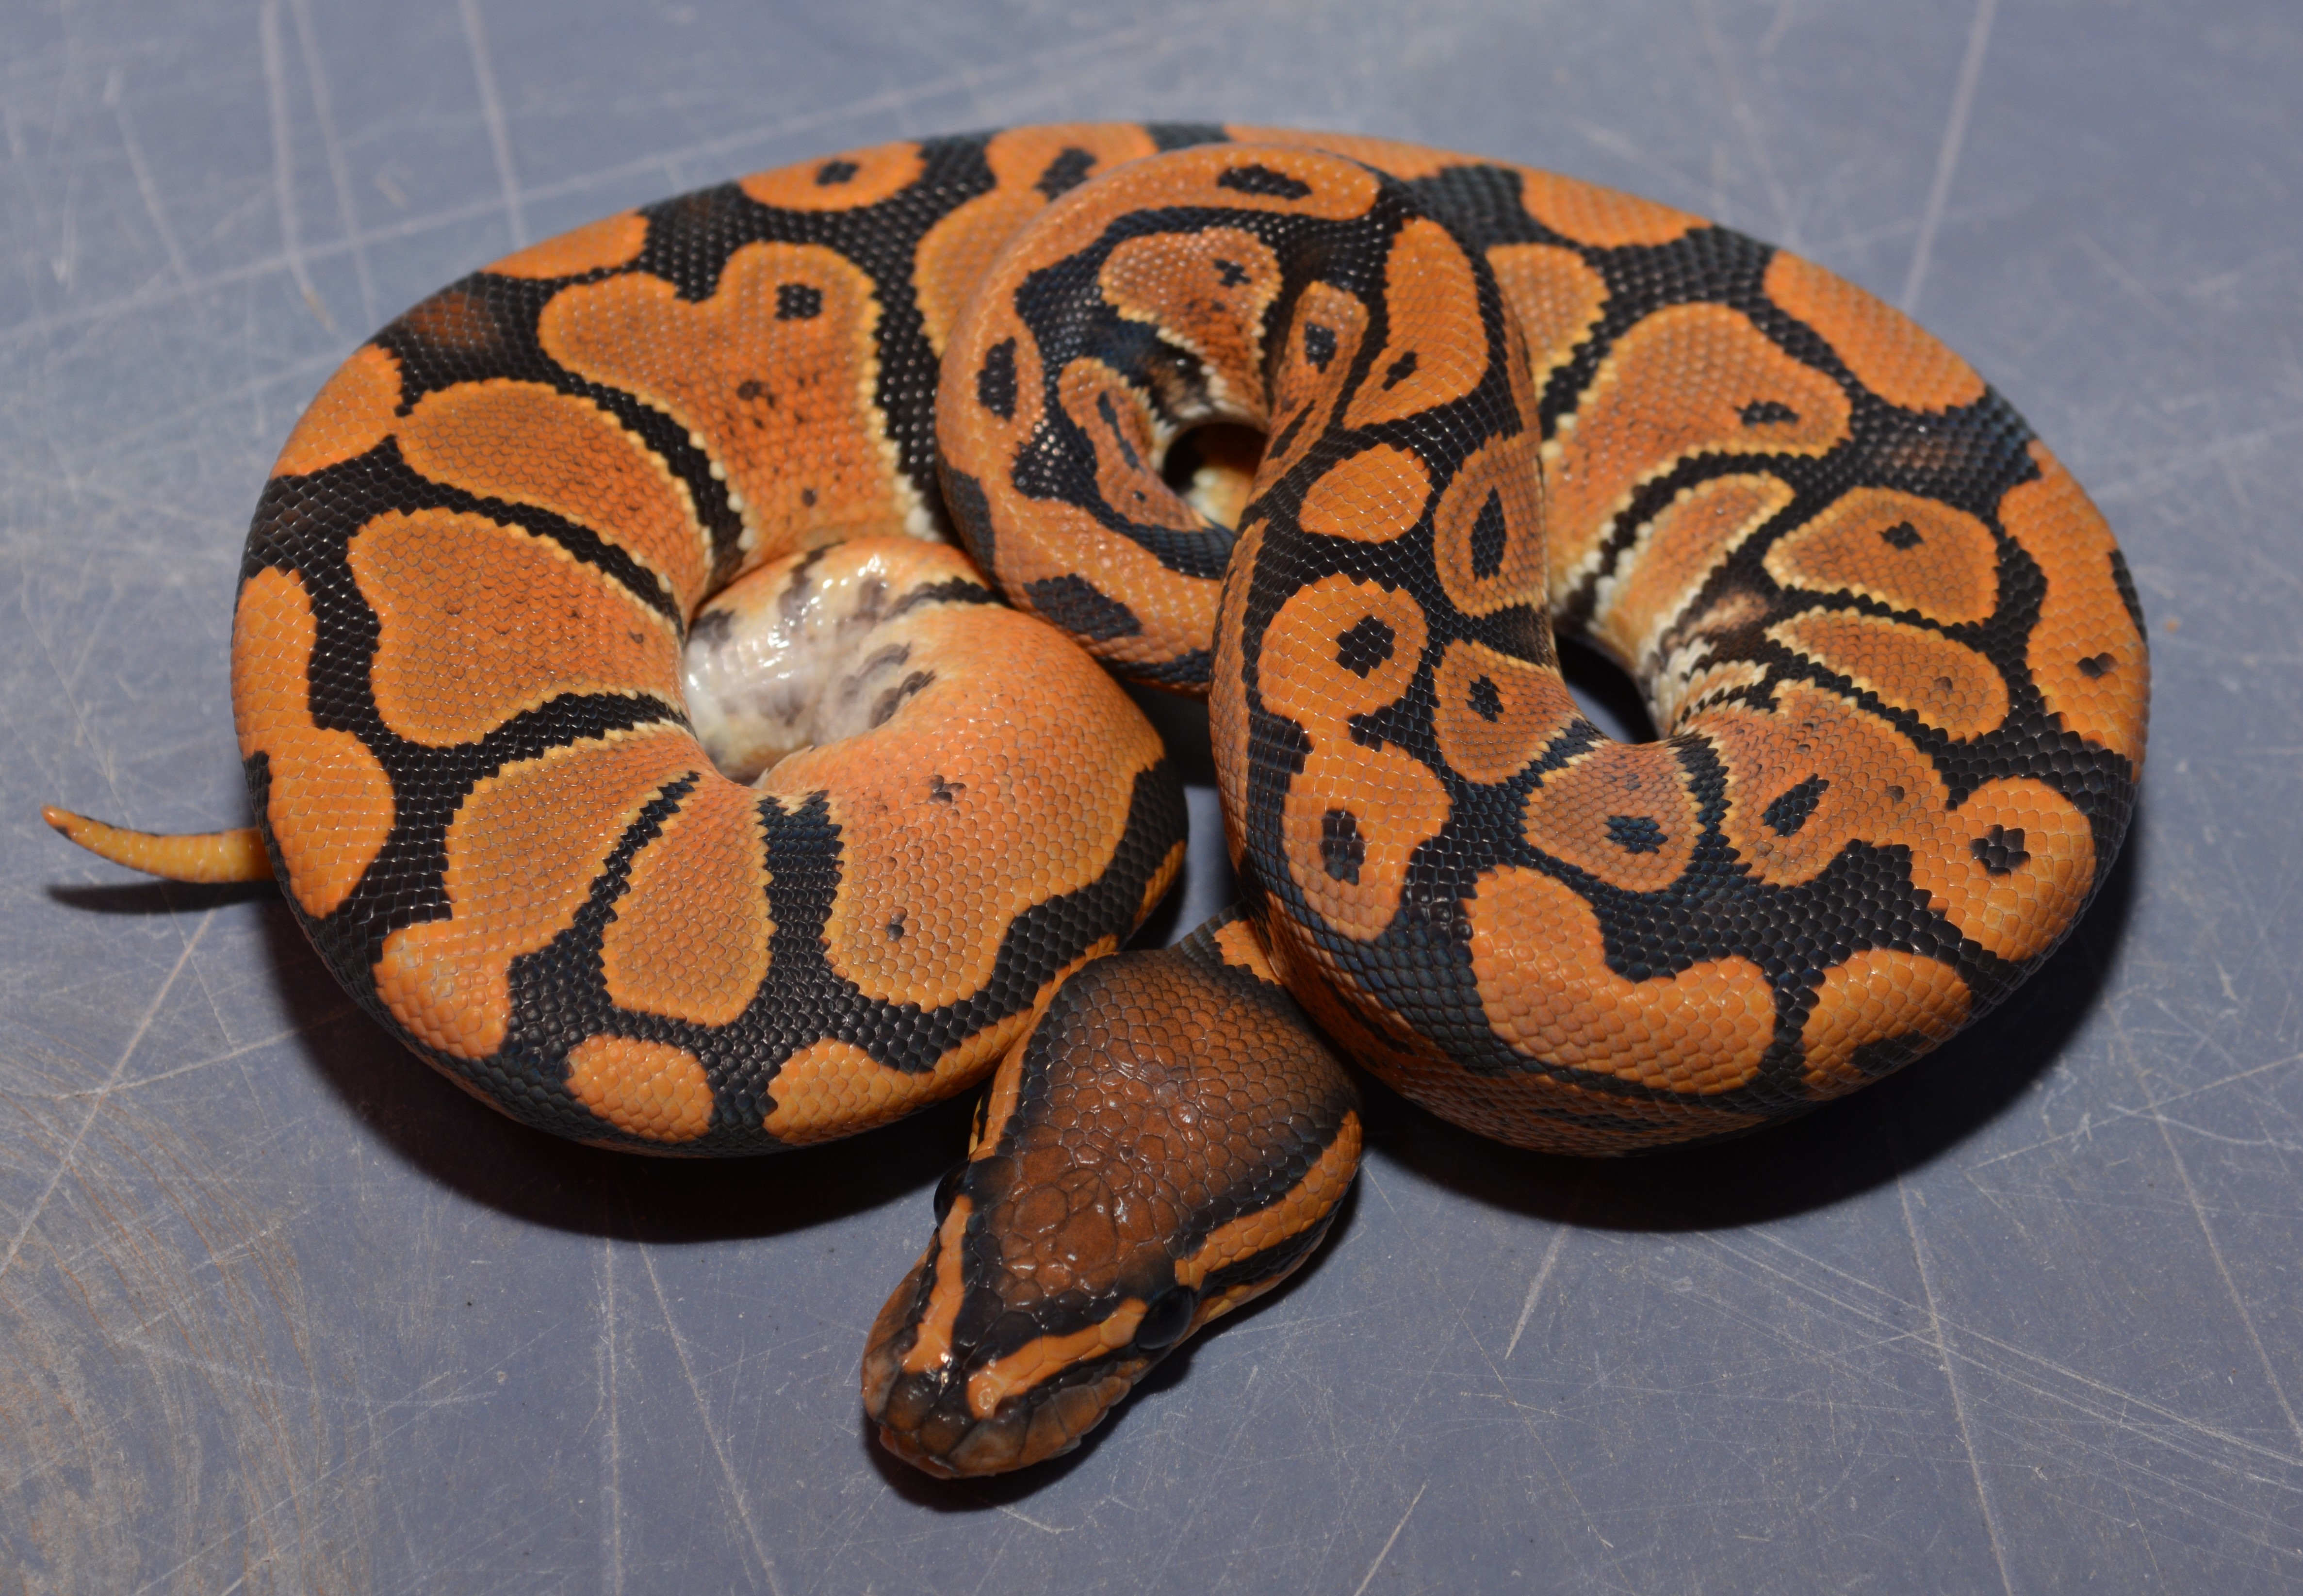 NR Mandarin Ball Python by The Florida Reptile Ranch